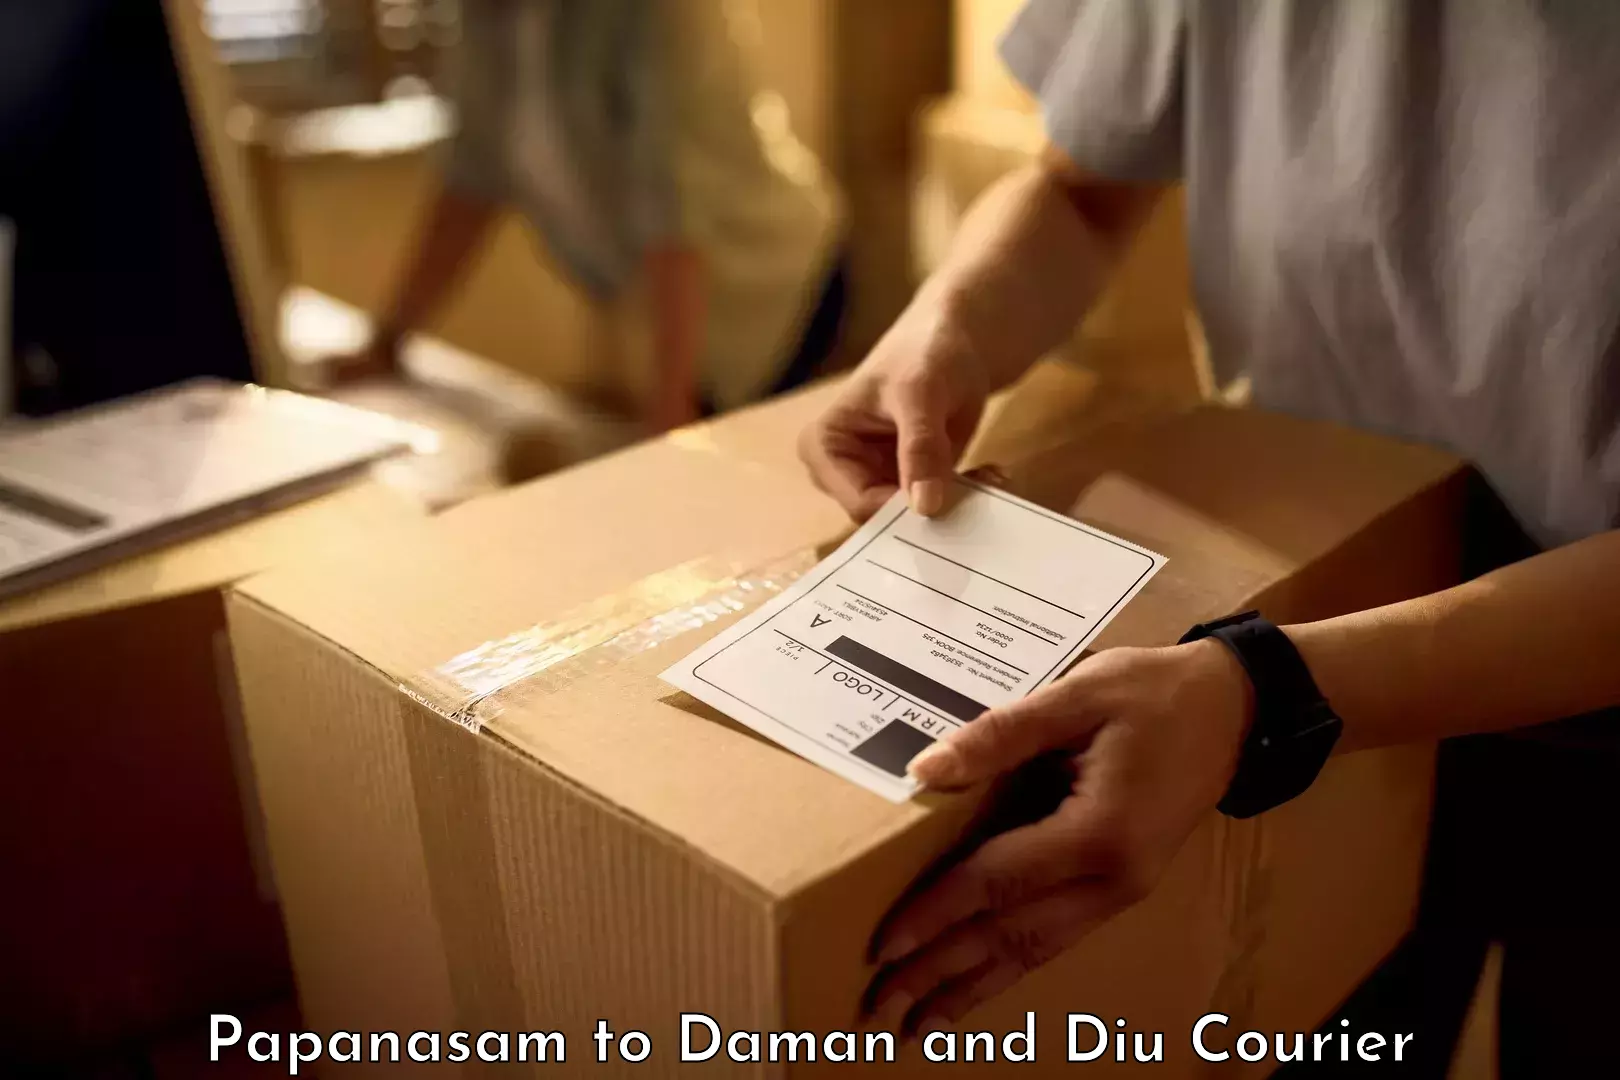 Luggage shipping service Papanasam to Diu